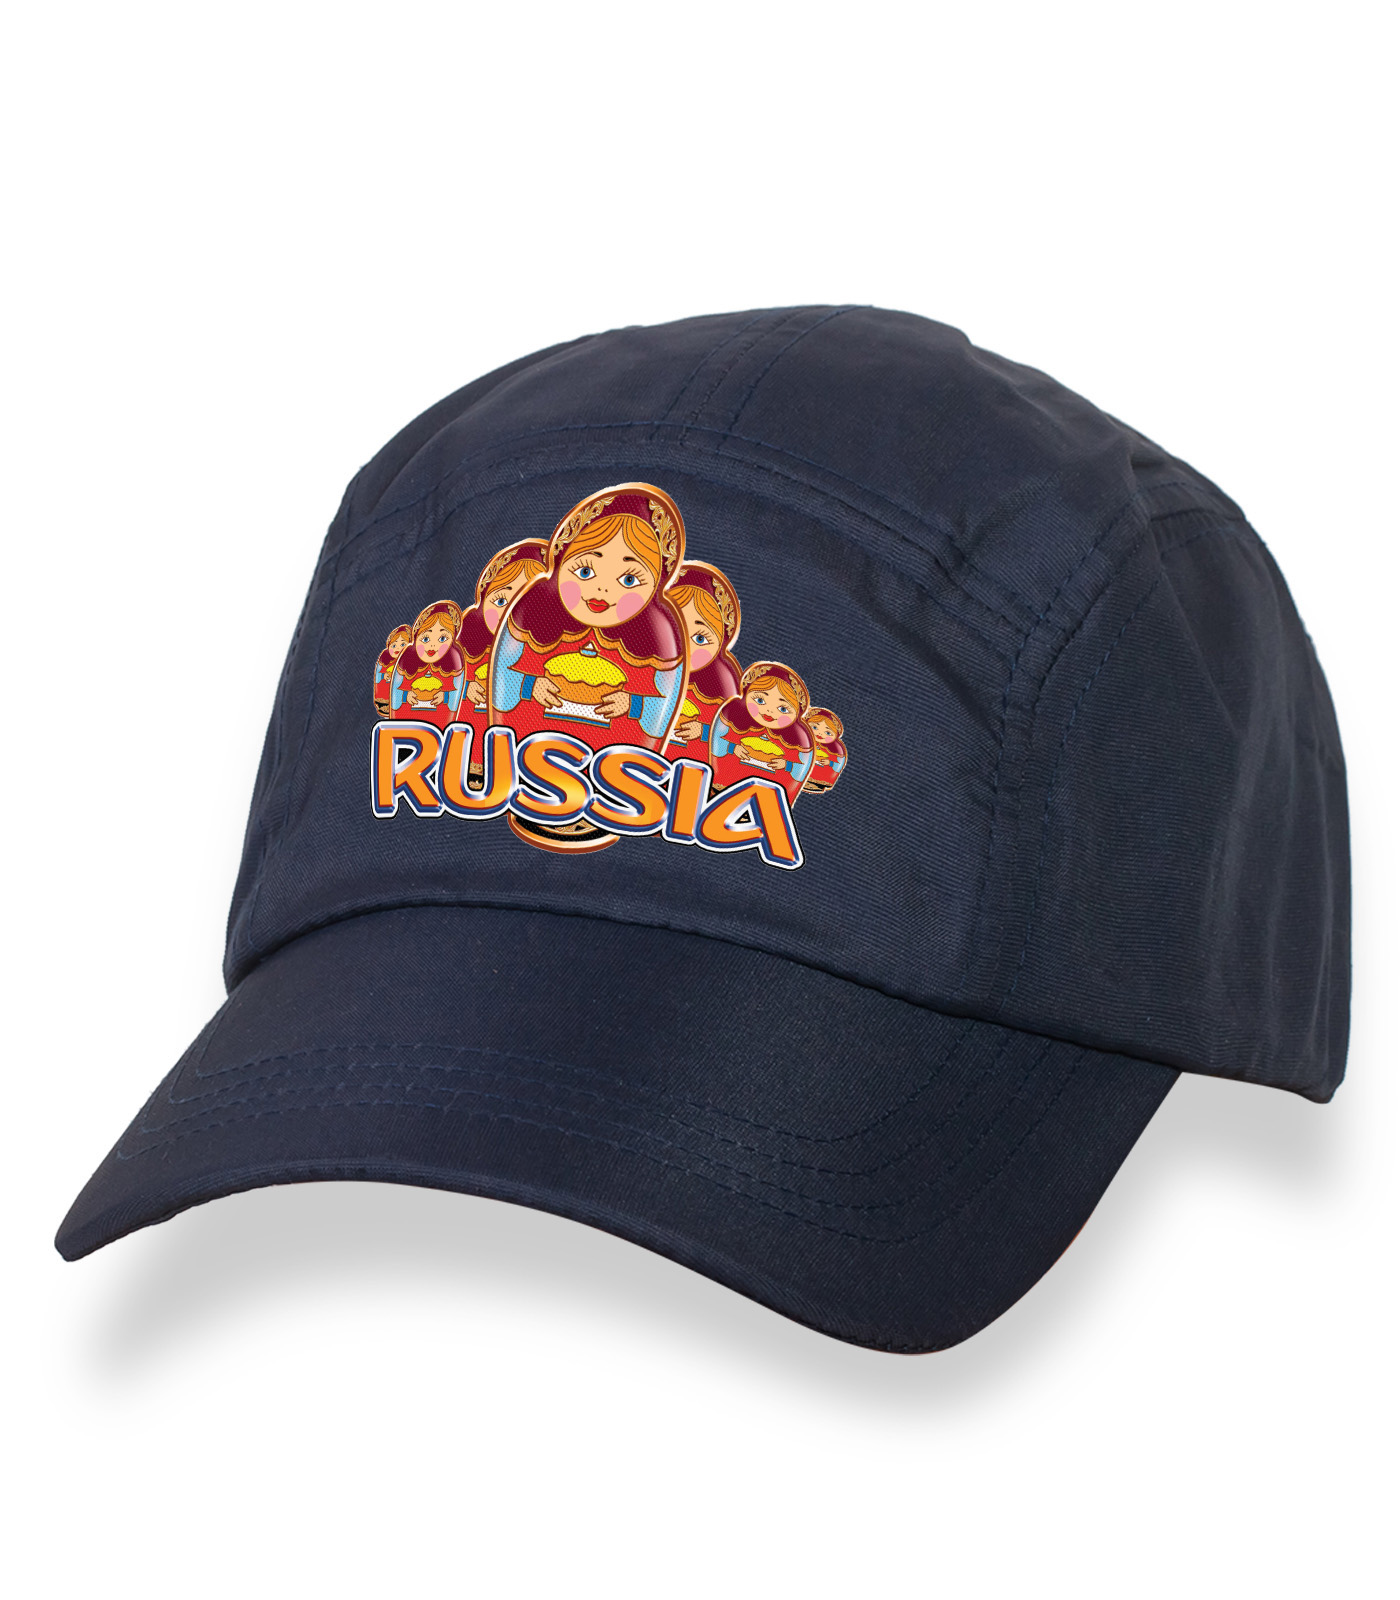 Купить лаконичную темно-синюю бейсболку с термонаклейкой Russia онлайн с доставкой